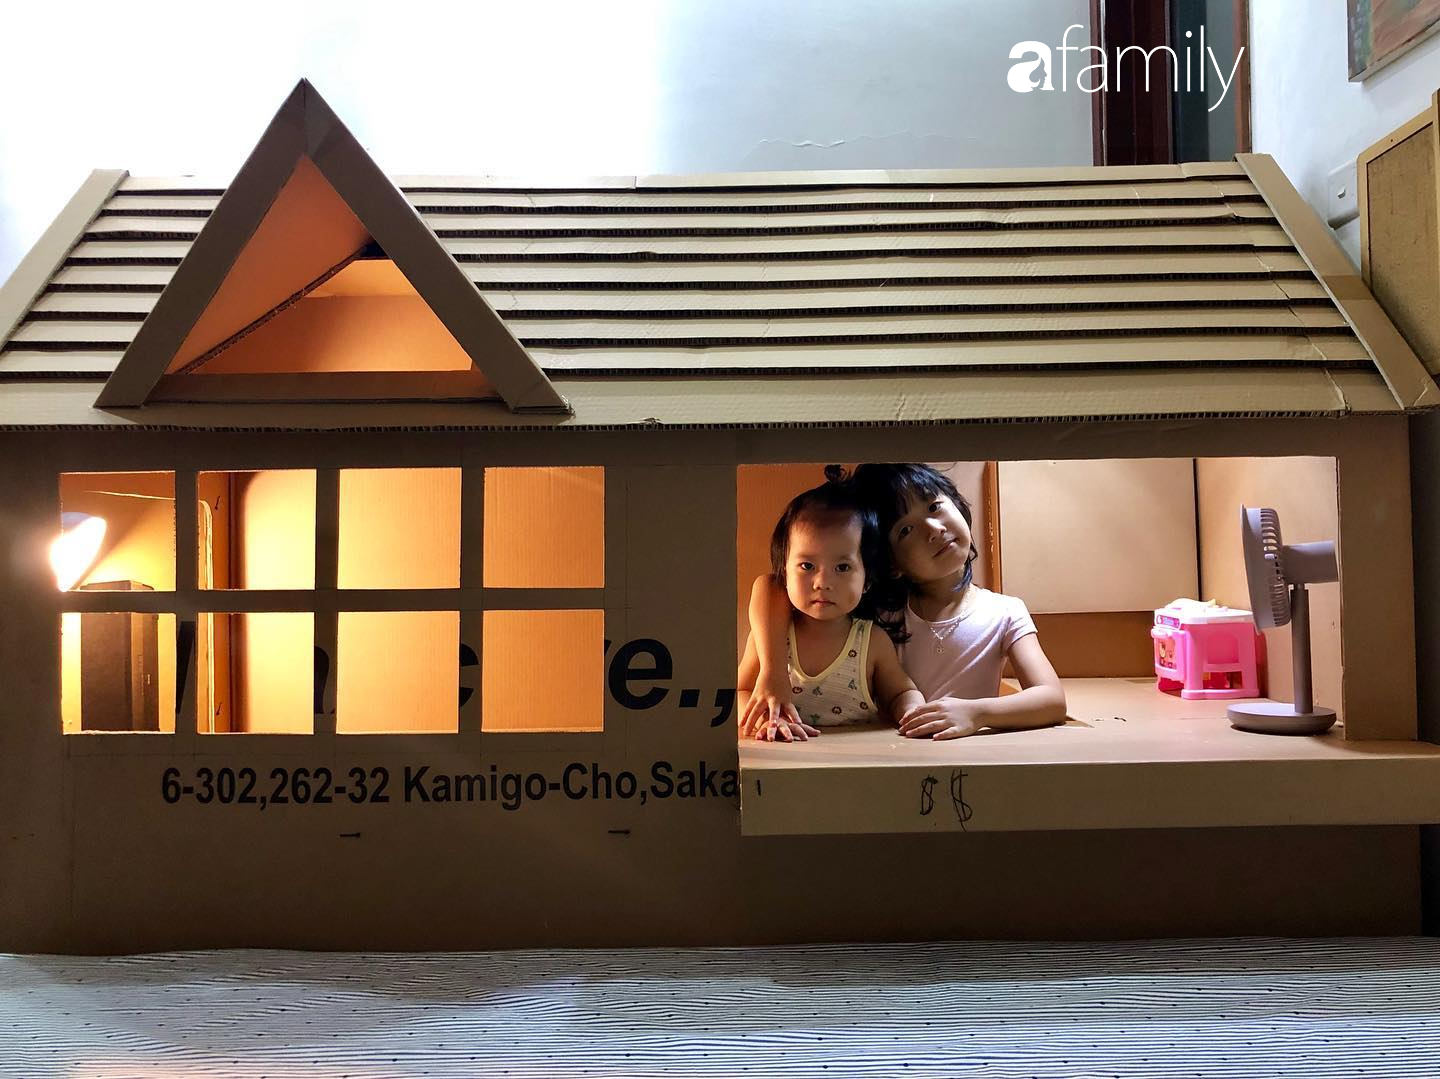 Thấy con ao ước có nhà riêng bố Hà Nội liền làm một ngôi nhà bằng bìa các  tông